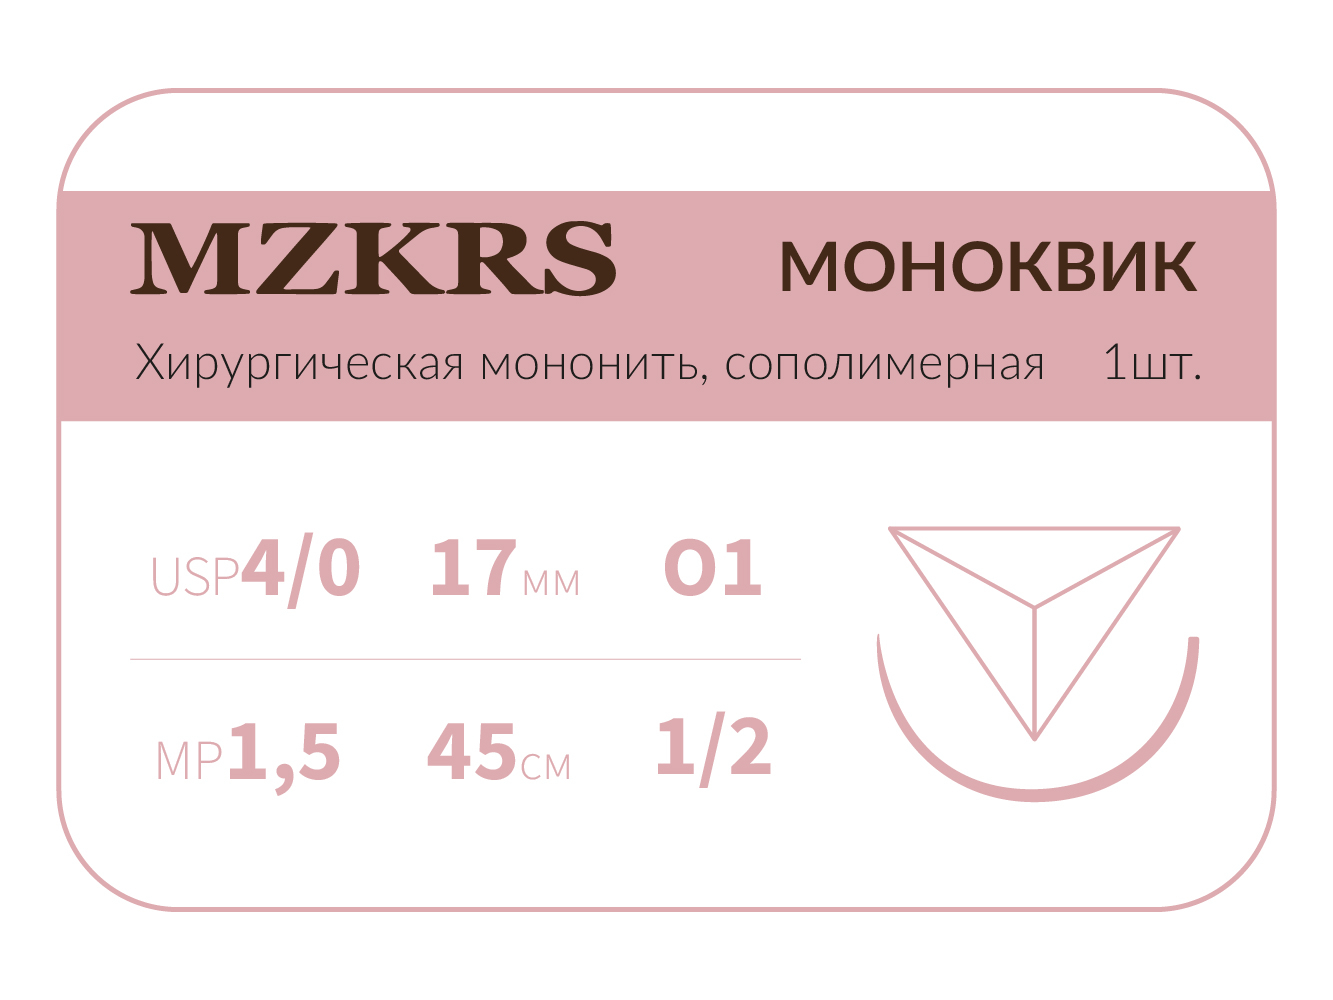 1712О1 Premium-4/0 (1,5)45 МОНК МОНОКВИК хирургическая мононить, сополимерная, обратно-режущая игла, MZKRS (Россия)